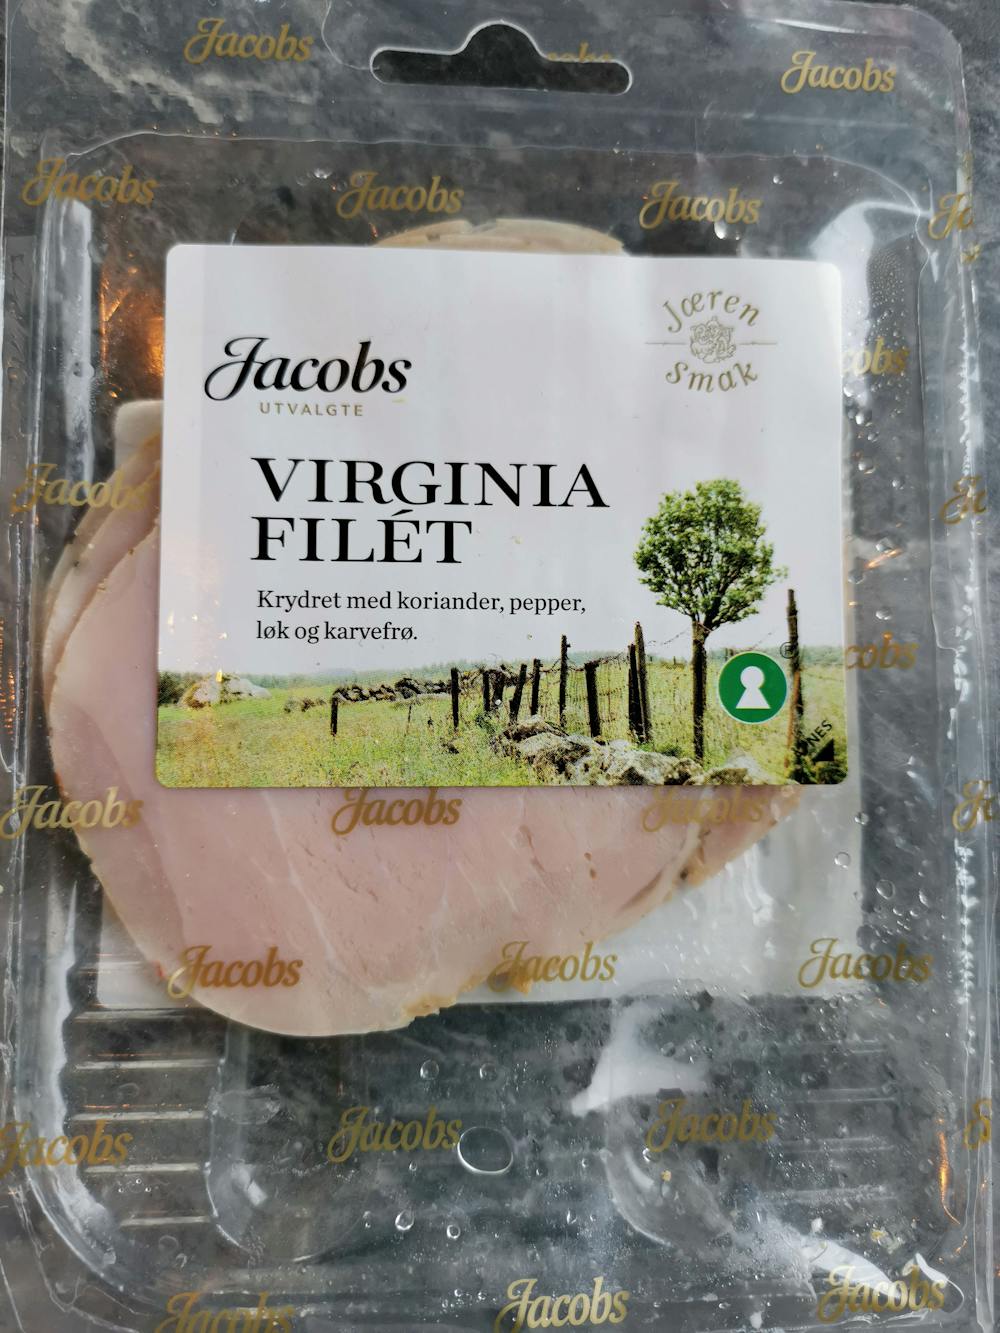 Virginia filét, Jacobs utvalgte